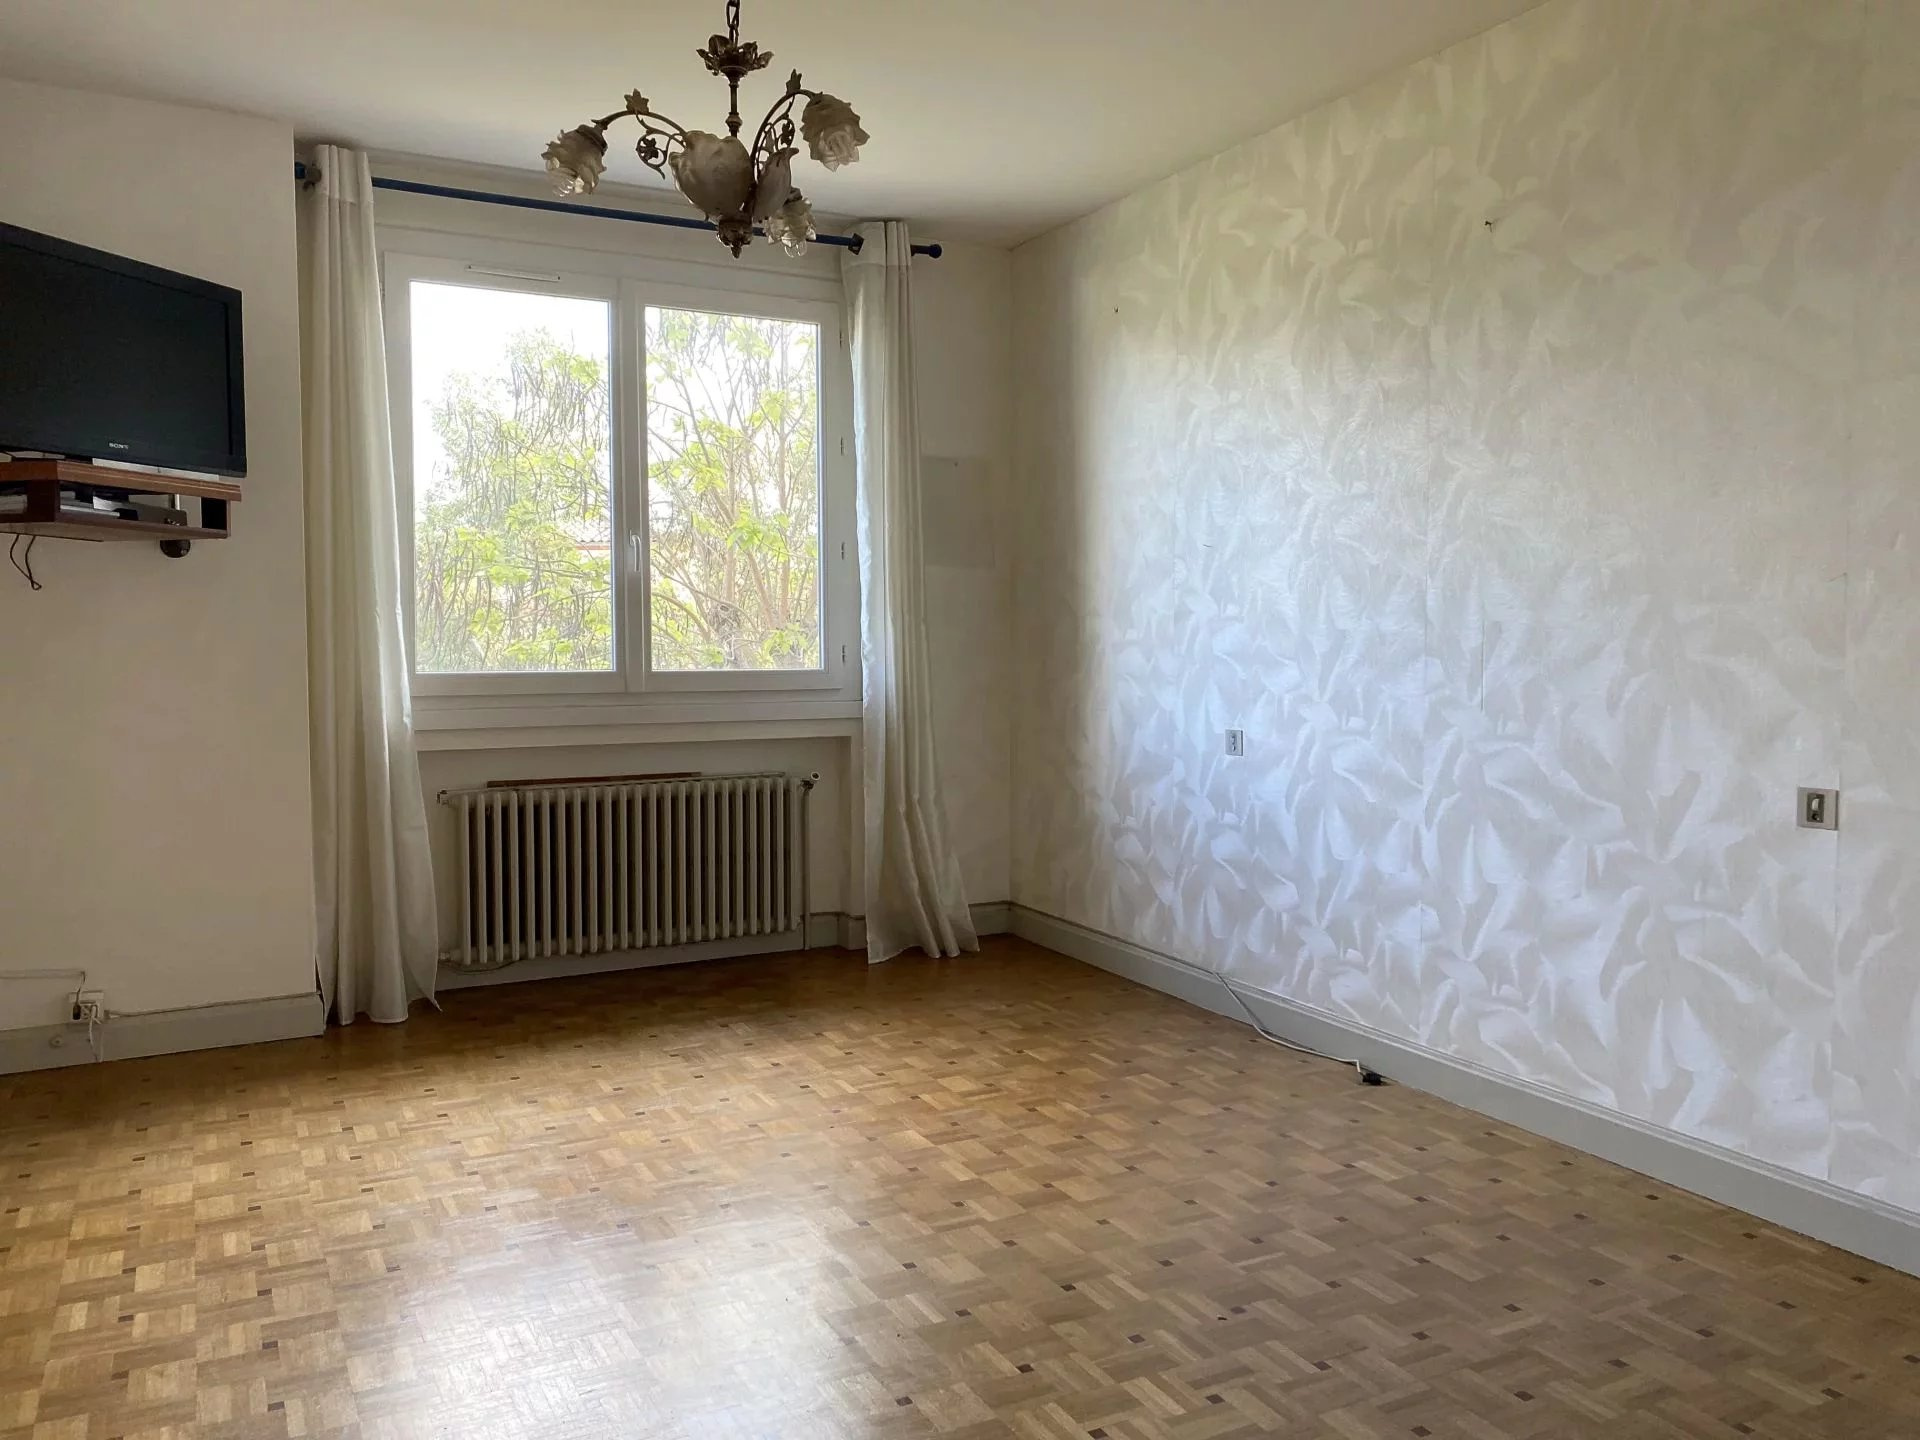 Appartement Appartement Lézignan-Corbières 600€ Grimois Immobilier